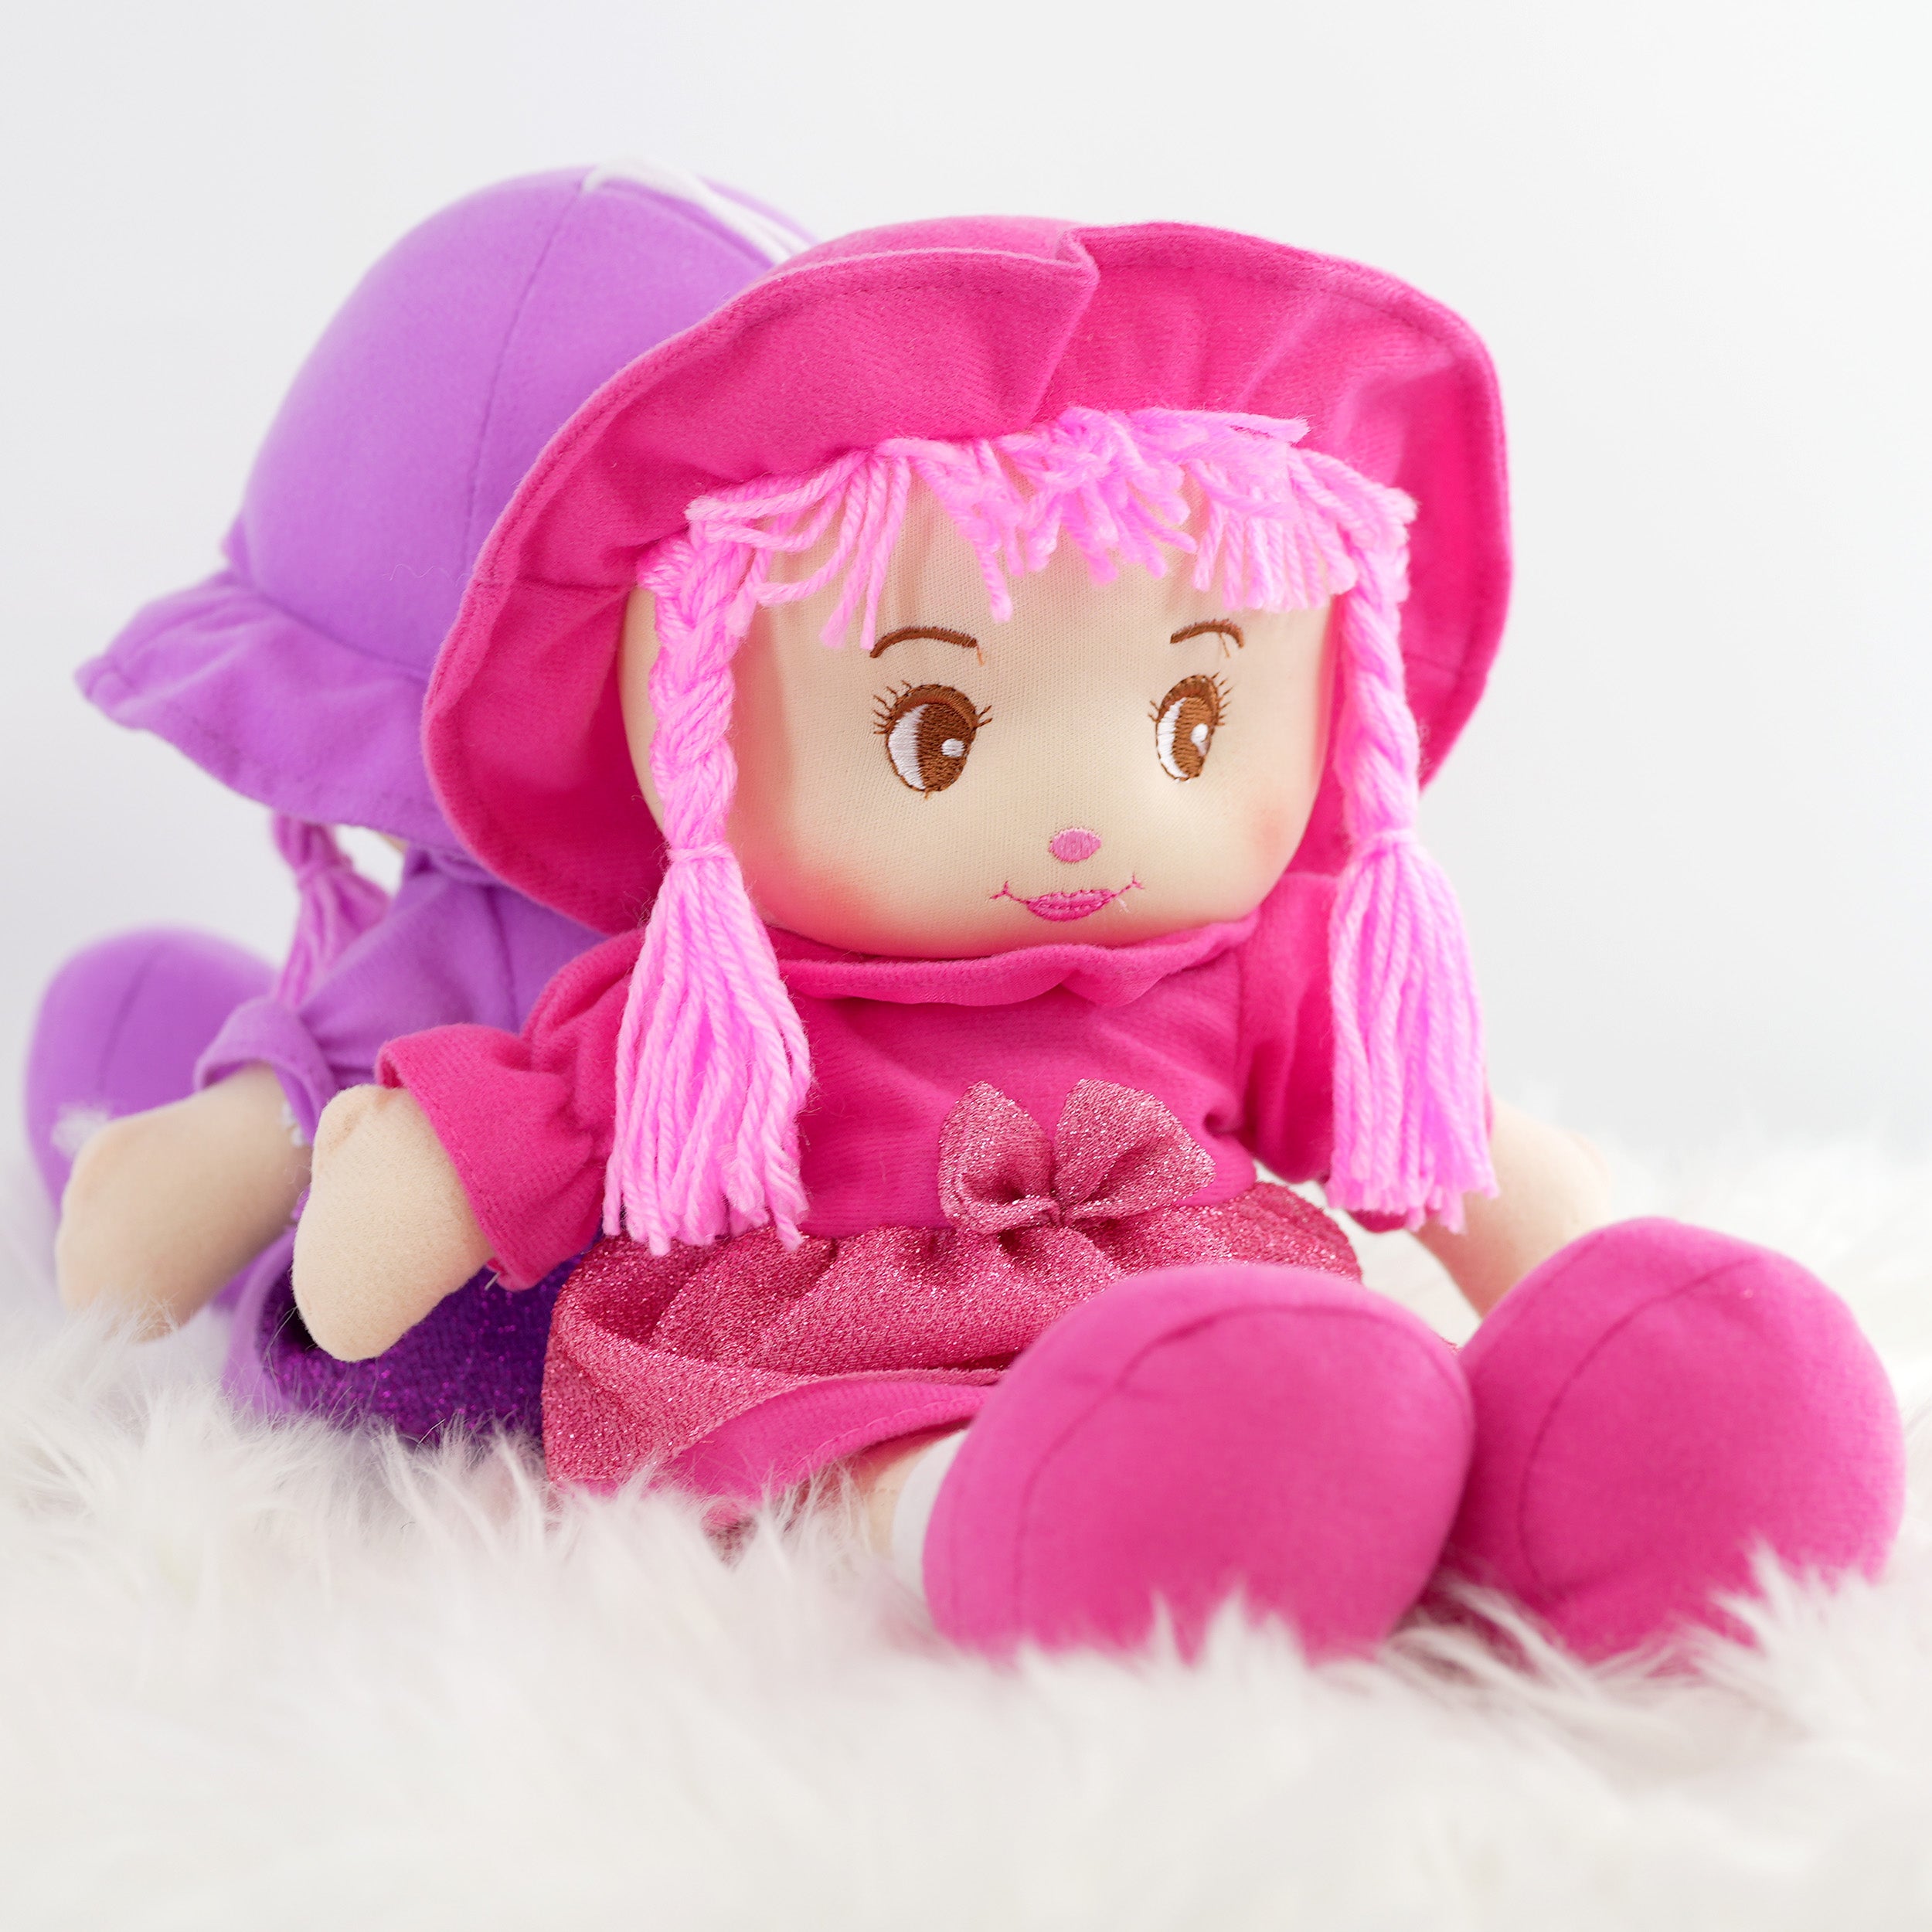 BiBi Doll Baby Doll My First Rag Doll 35 cm Soft Cuddly Dolly